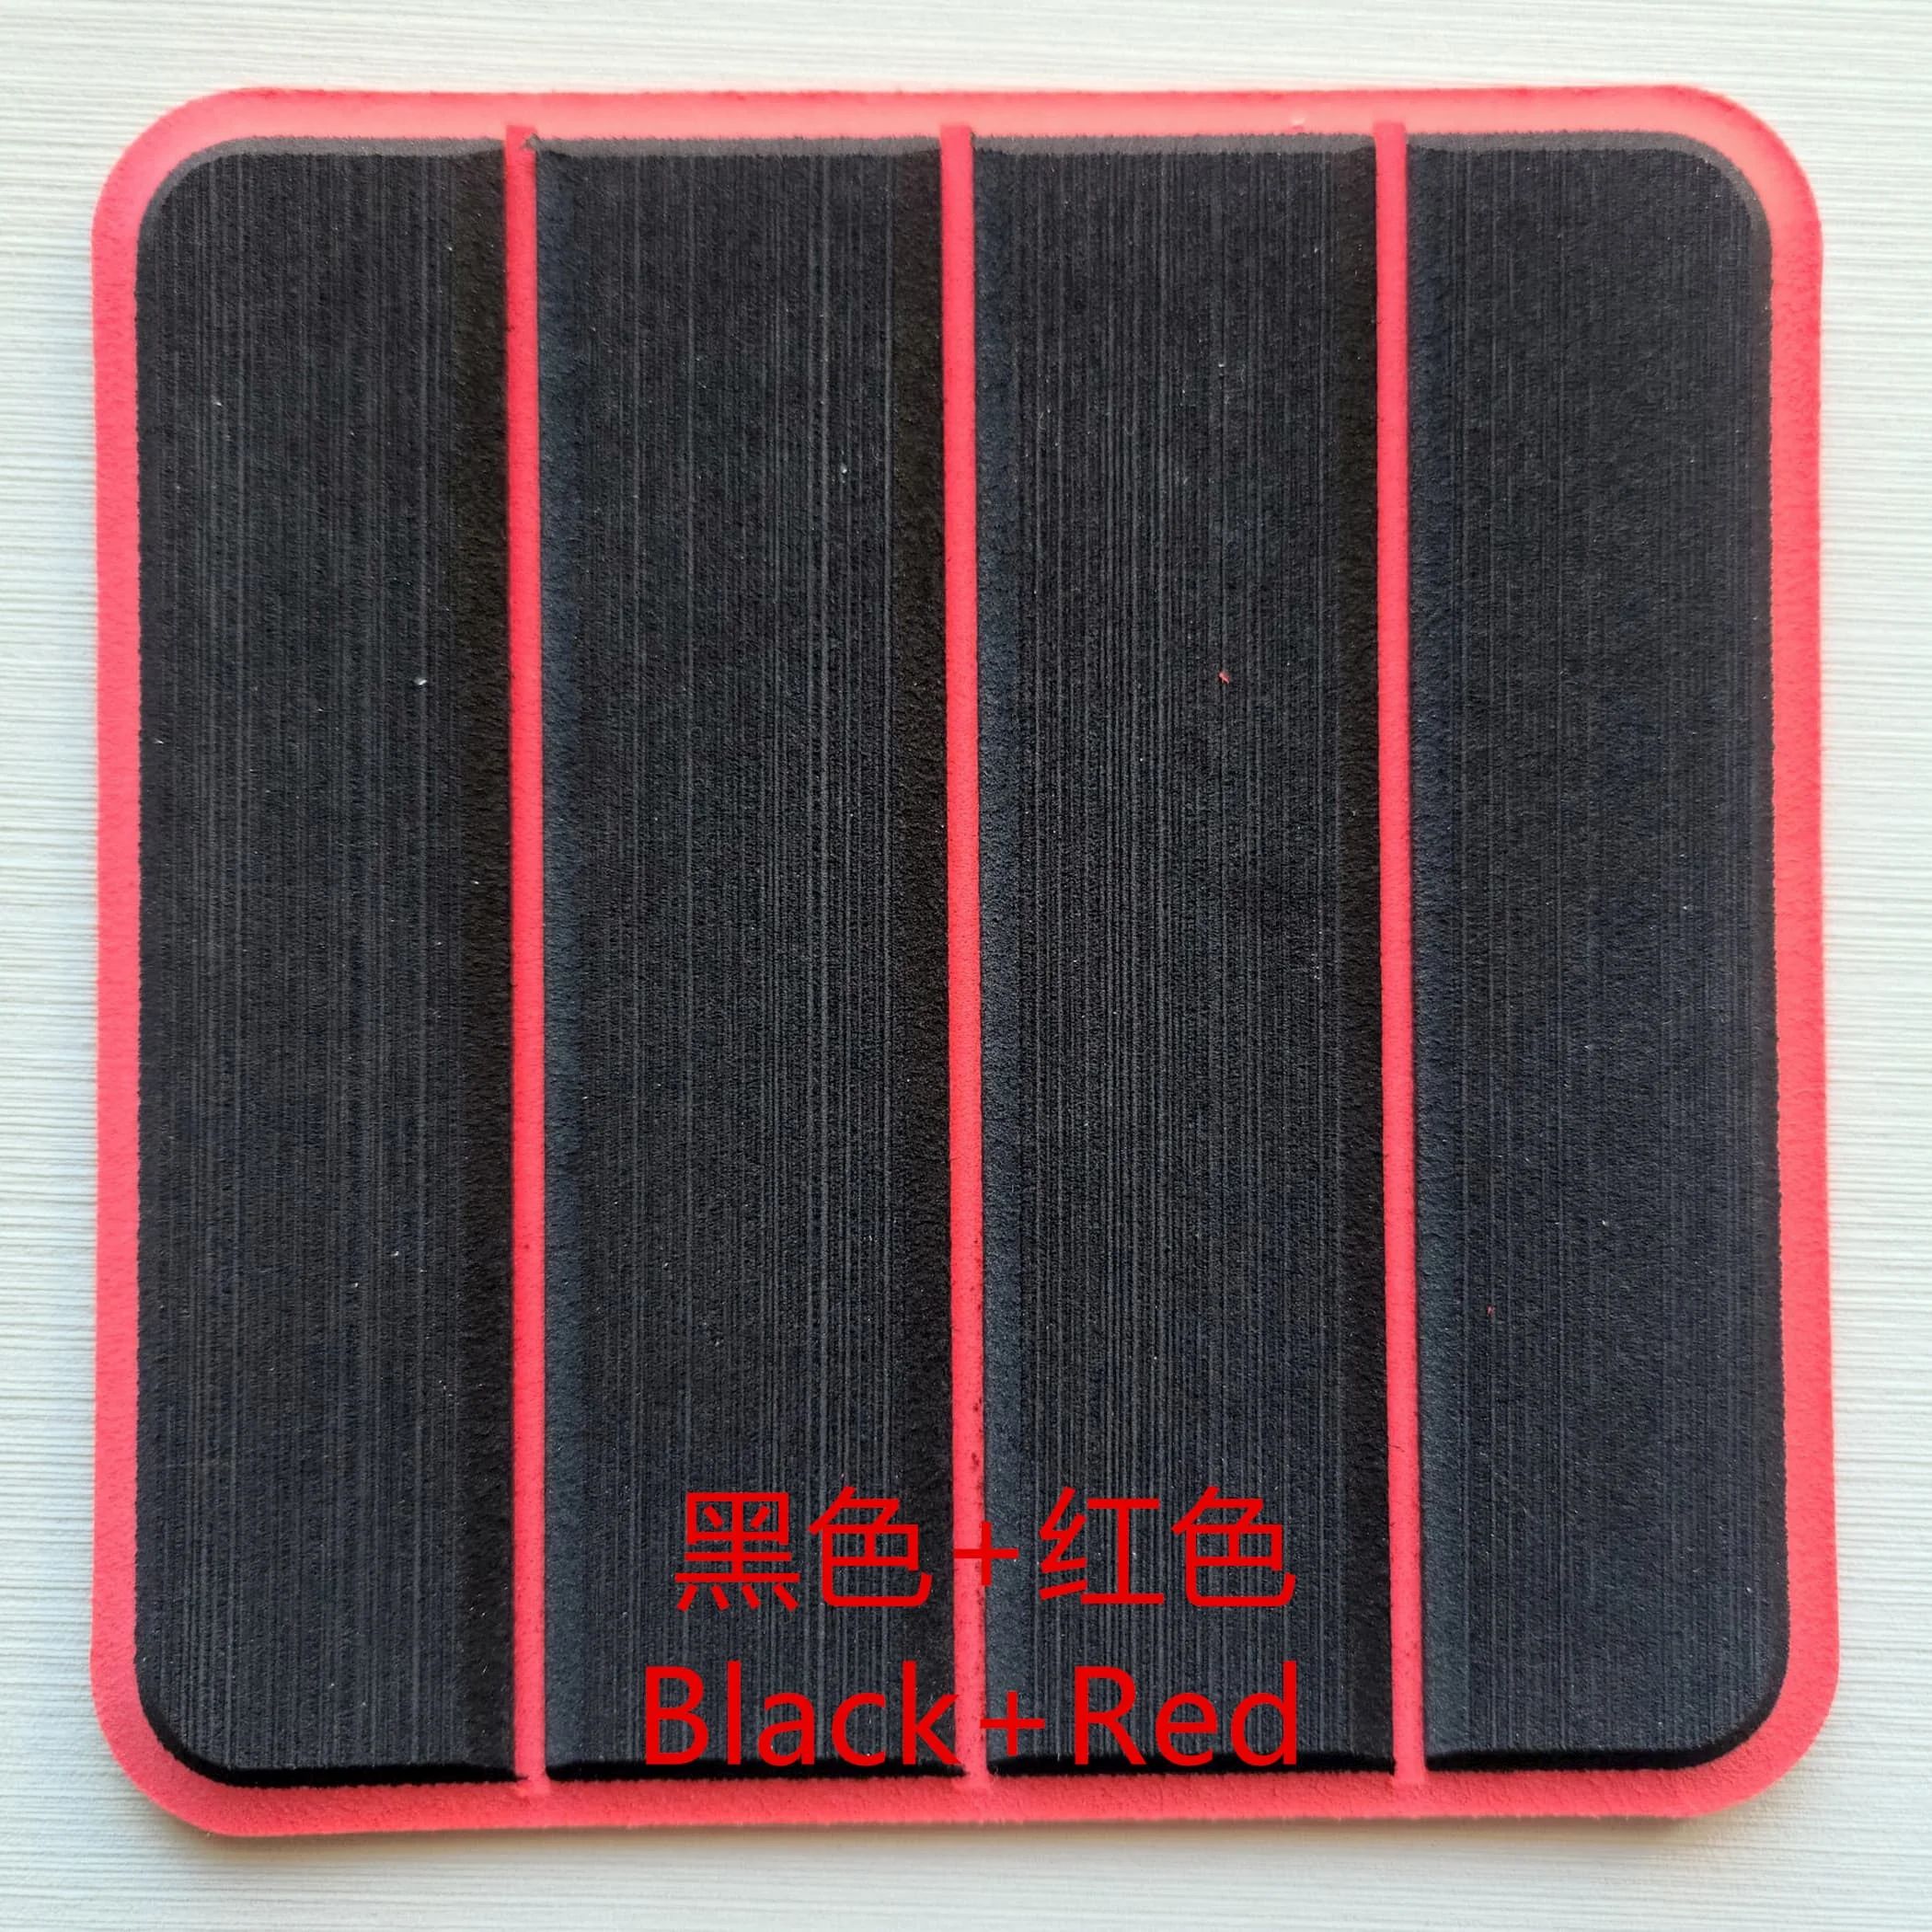 Colore: nero su rosso